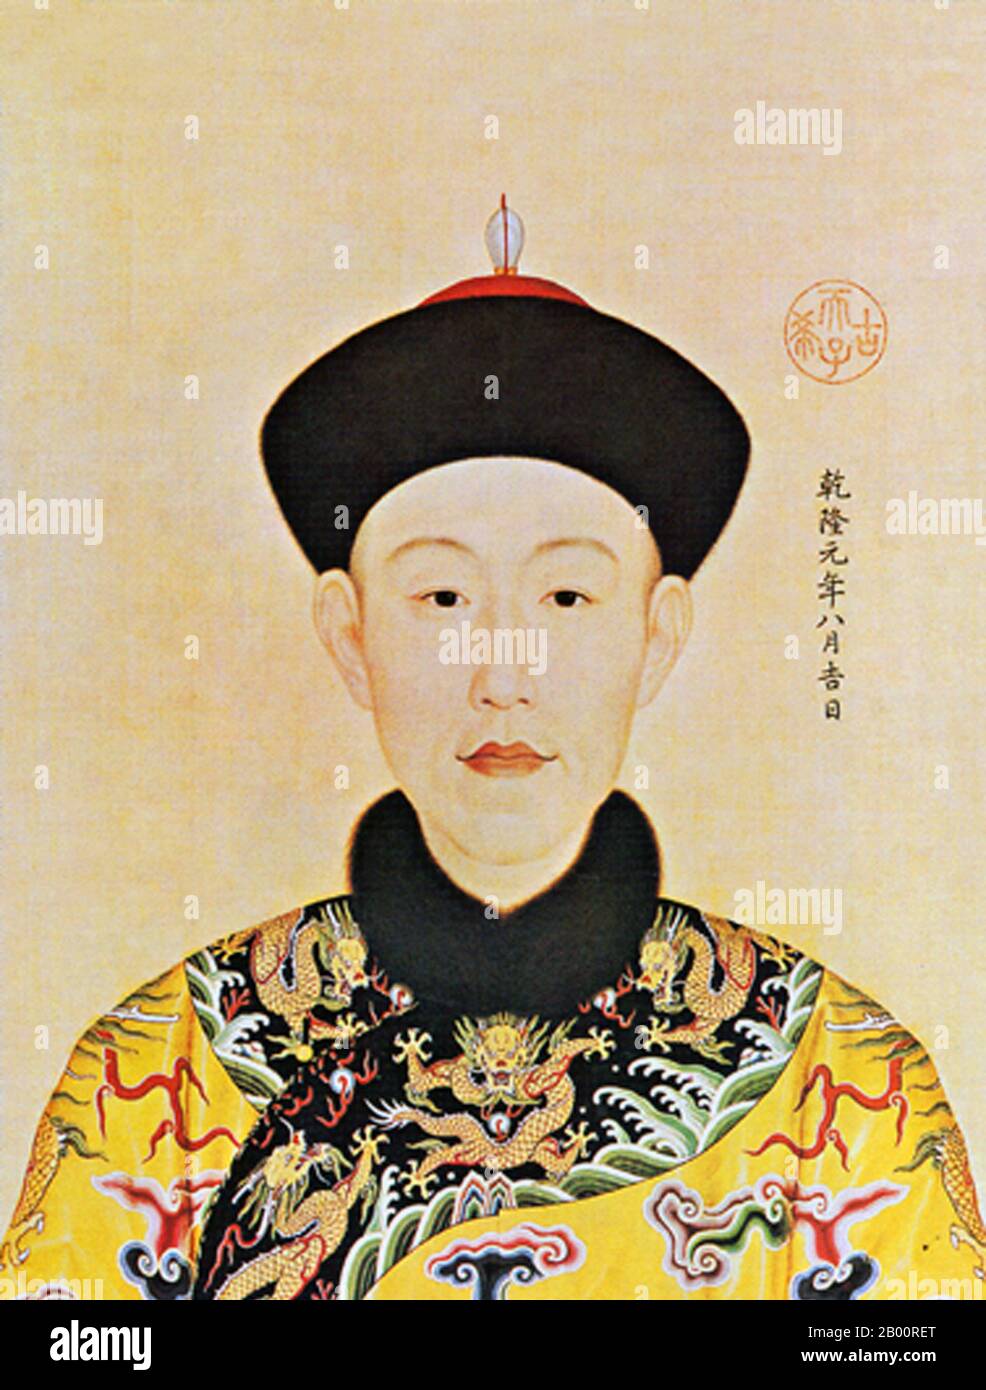 China/Italien: Der junge Kaiser Qianlong im ersten Jahr seiner Herrschaft. Handscroll Gemälde von Giuseppe Castiglione (1688-1766), 1736. Der Kaiser Qianlong (chinesisches Pinyin: Qianlong Di; Wade–Giles: Chien-lung Ti), geboren Hongli (25. September 1711 – 7. Februar 1799), war der fünfte Kaiser der von Mandschu geführten Qing Dynastie und der vierte Kaiser Qing, der über China selbst regierte. Der vierte Sohn des Yongzheng Kaisers regierte offiziell vom 11. Oktober 1736 bis zum 7. Februar 1795. Am 8. Februar (dem ersten Tag des Mondjahres) gab er zugunsten seines Sohnes, des Kaisers Jiaqing, ab. Stockfoto